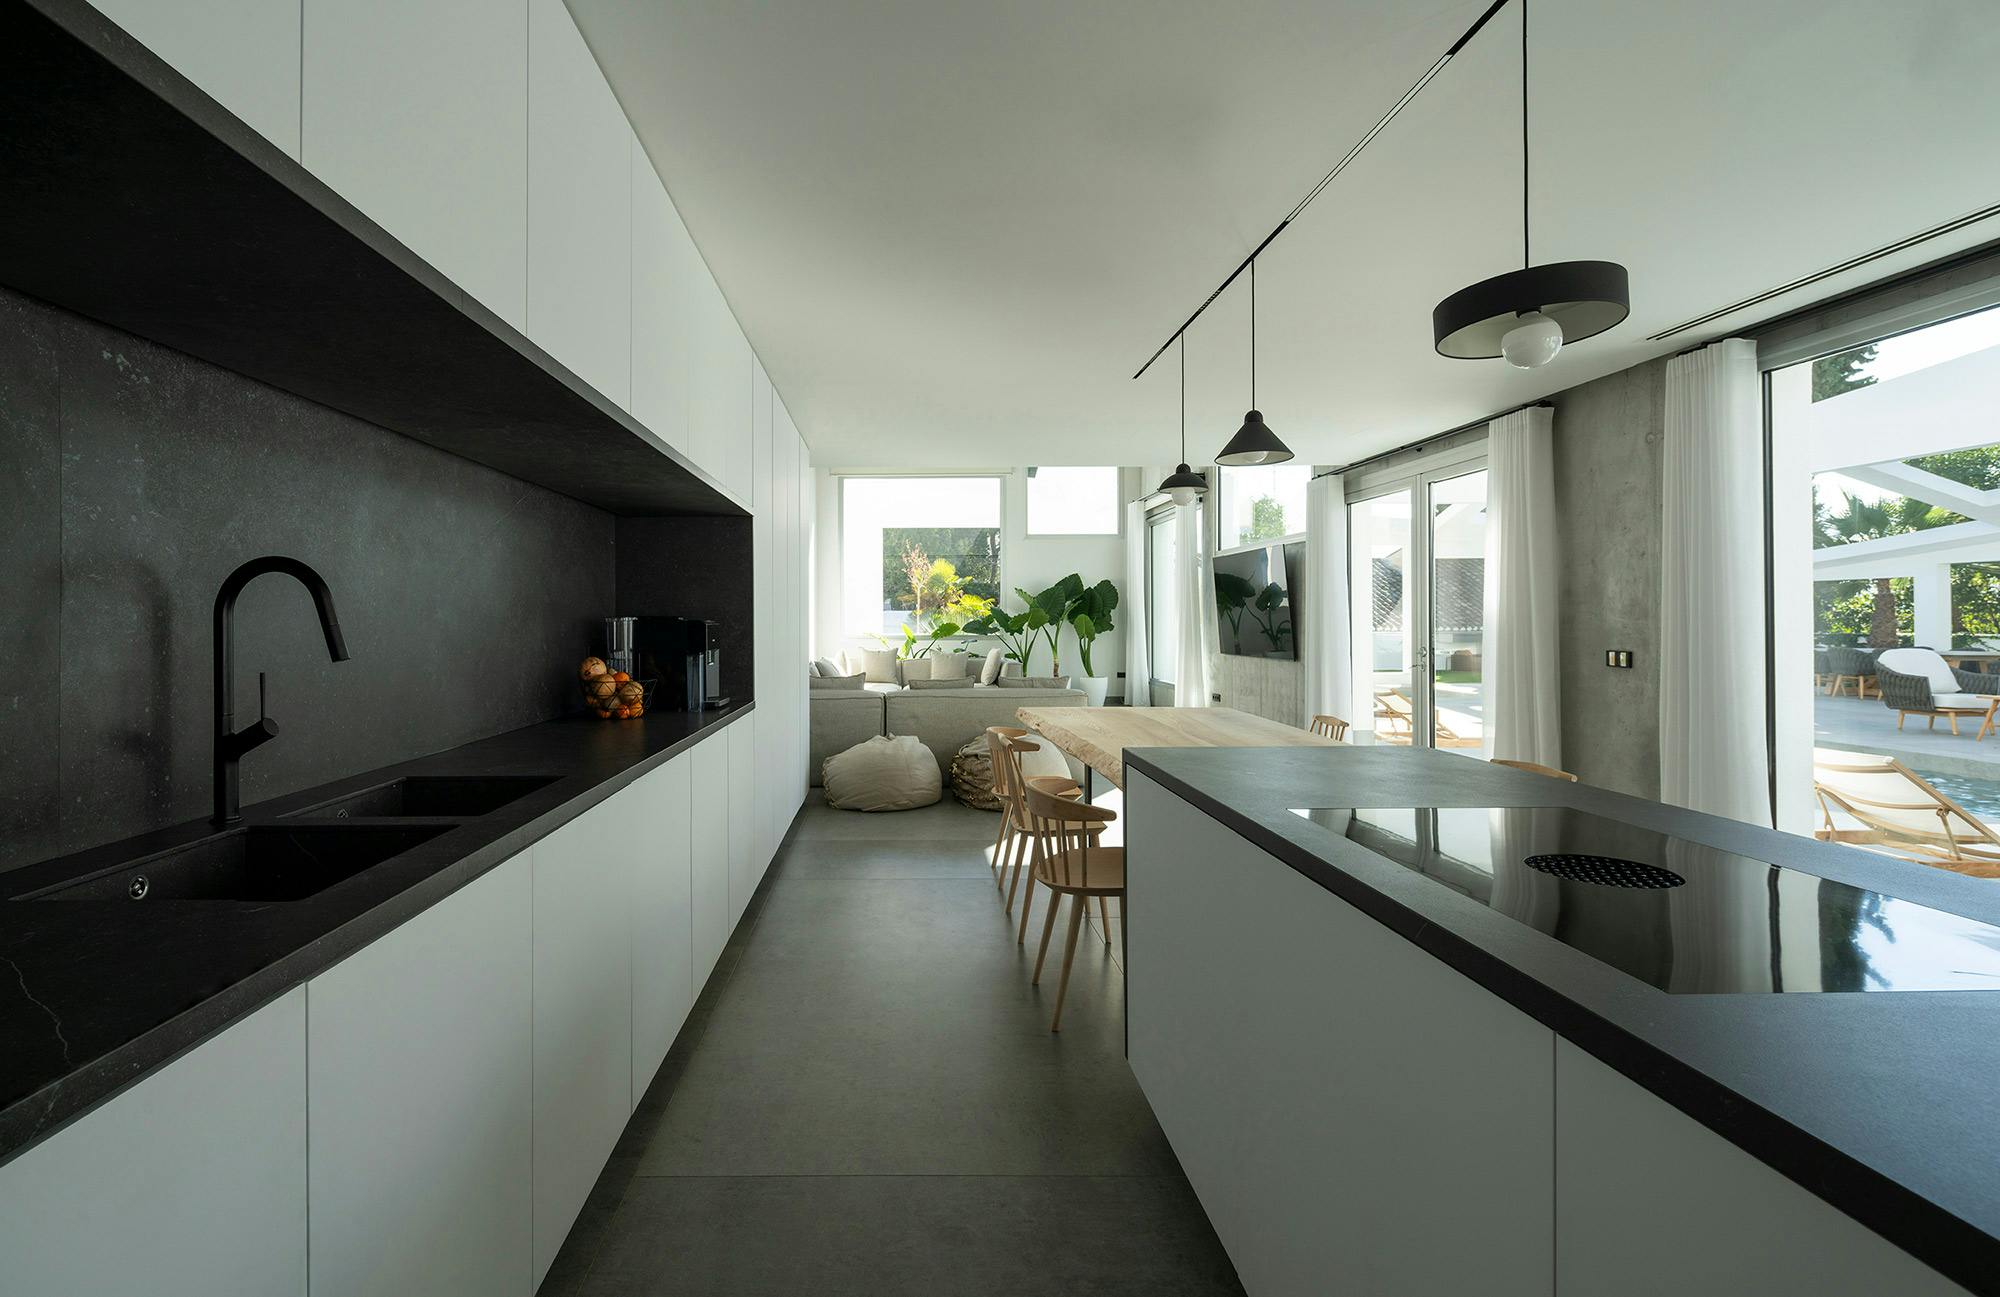 Bildnummer 45 des aktuellen Abschnitts von Küchen im Aussenbereich von Cosentino Deutschland